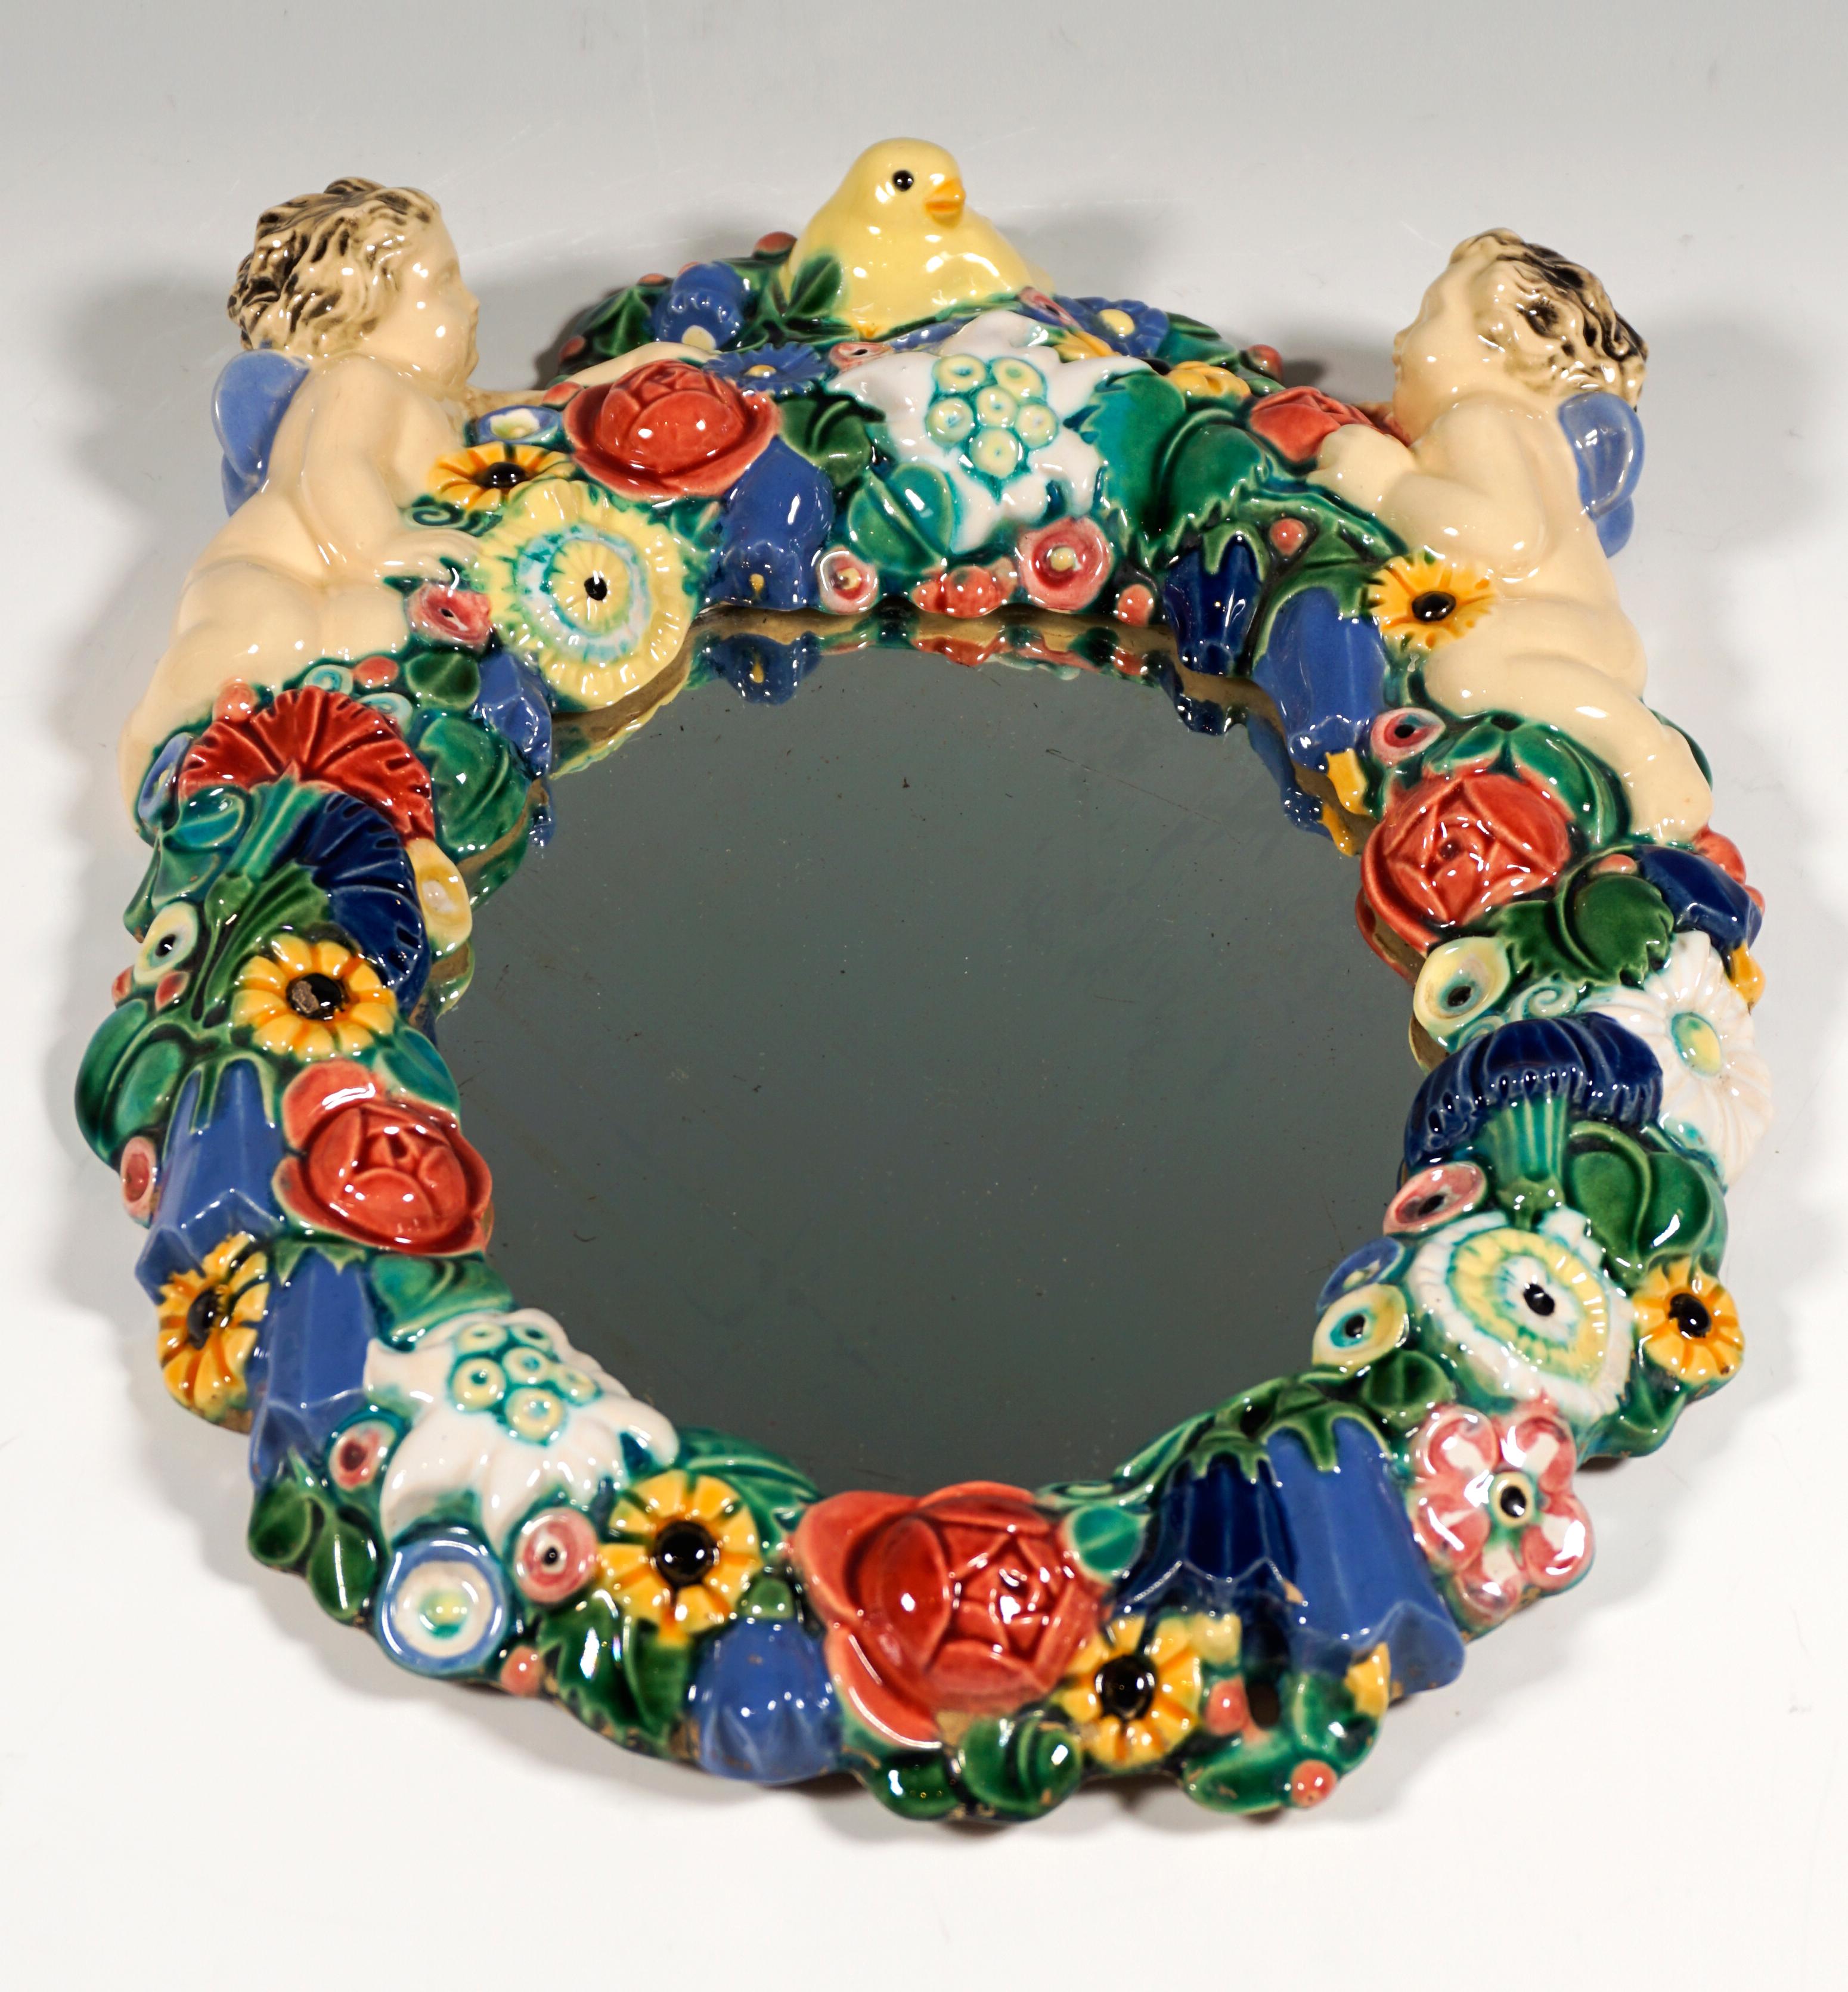 Ovaler Spiegel, umrahmt von einem dichten farbigen Blumenkranz aus Keramik, am oberen Rand zwei geflügelte Putten, dazwischen in der Mitte ein Vogel.

Von Michael Powolny (1871 - 1954)
Heute bescheinigen Kunstexperten Michael Powolny, einer der